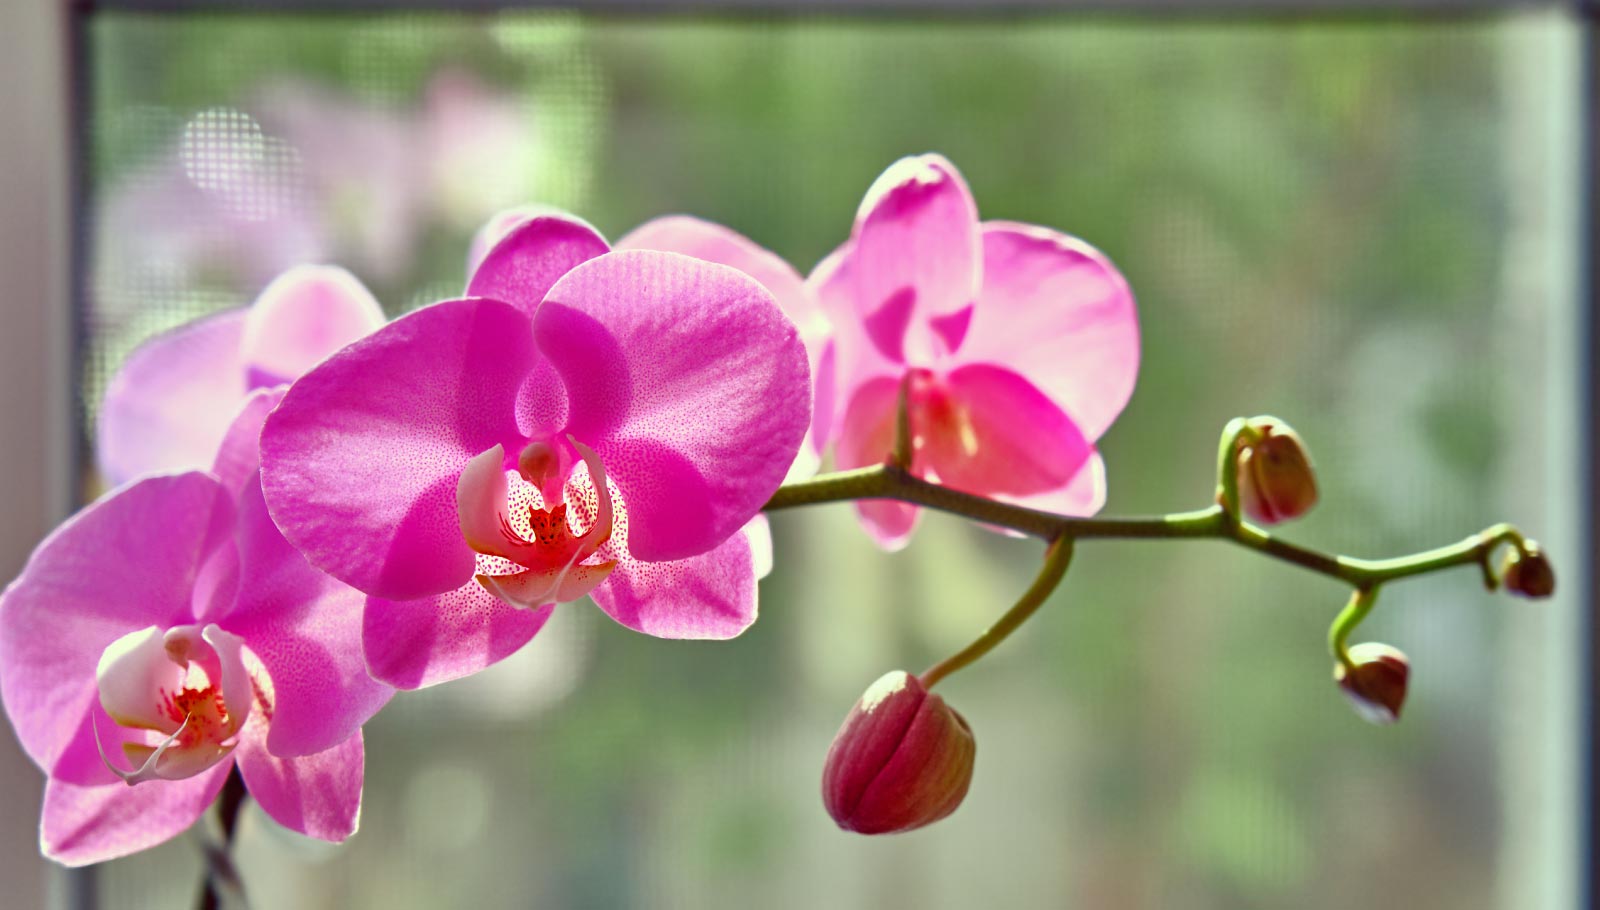 pet-friendly plants - orchid